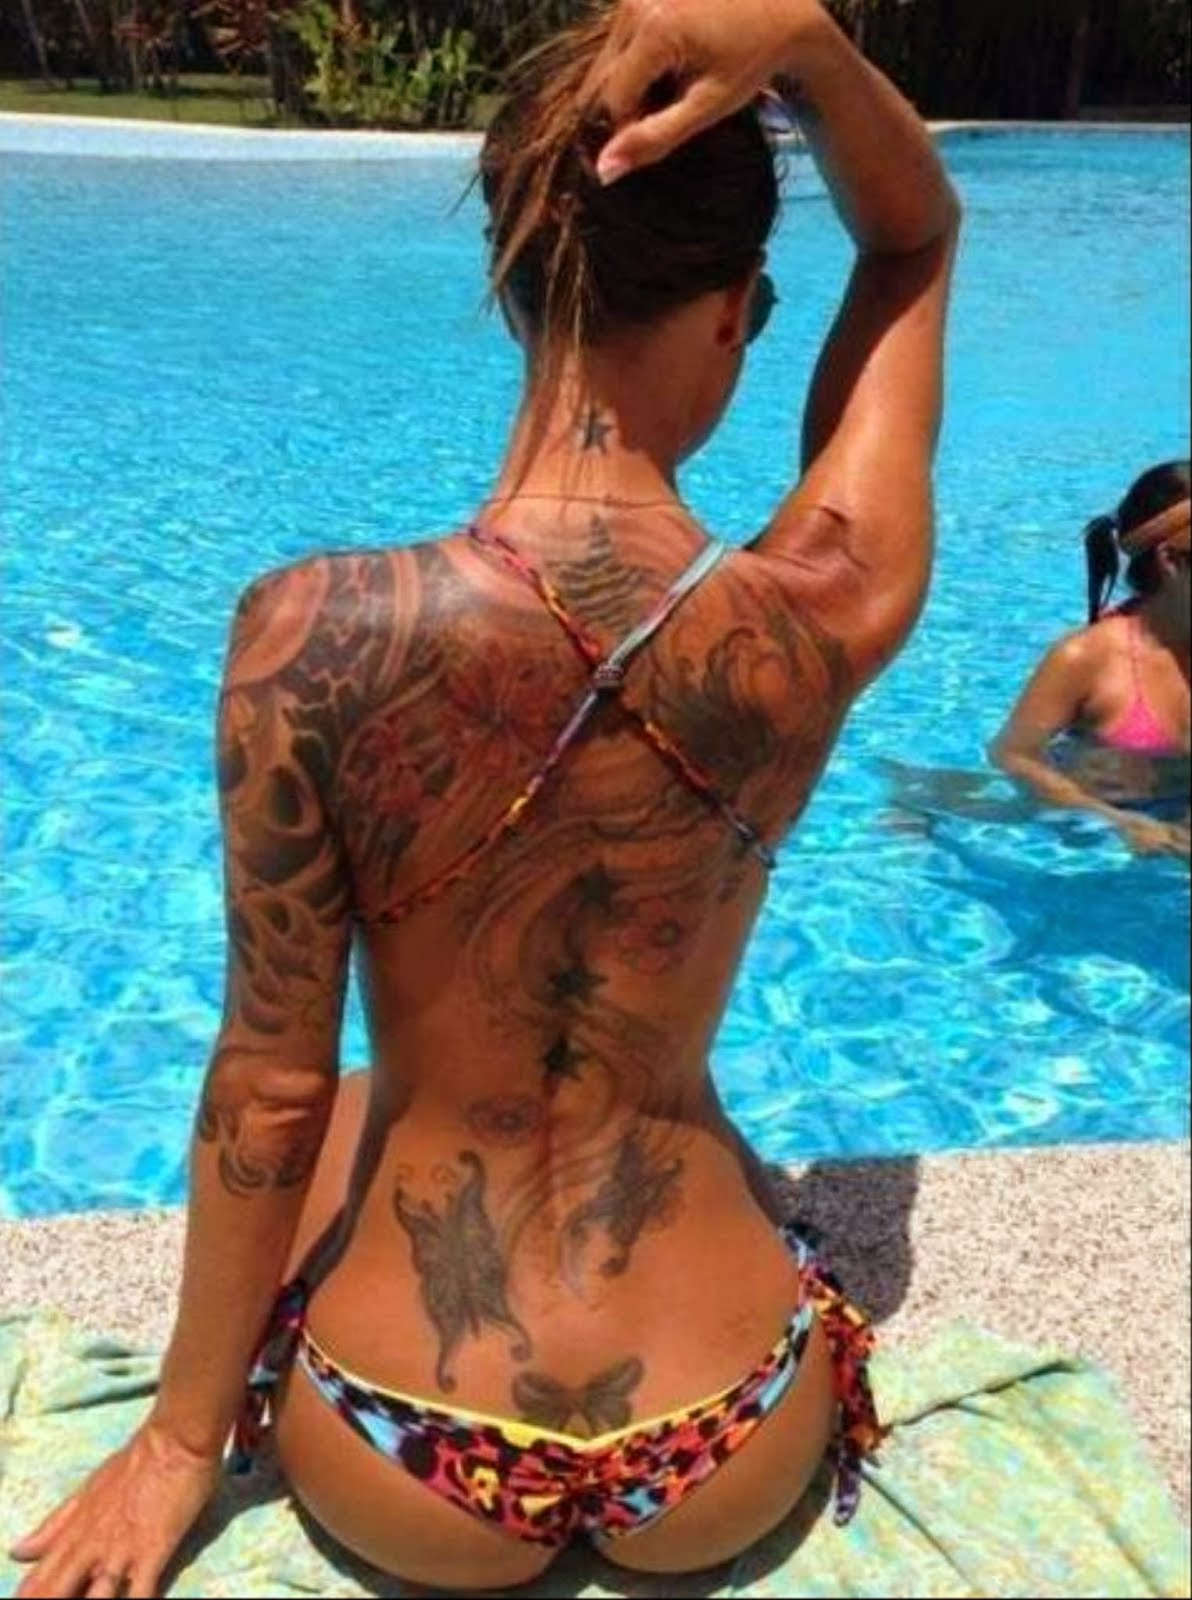 Милфа с татуировками на руках обнажает гигантские сиськи около бассейна